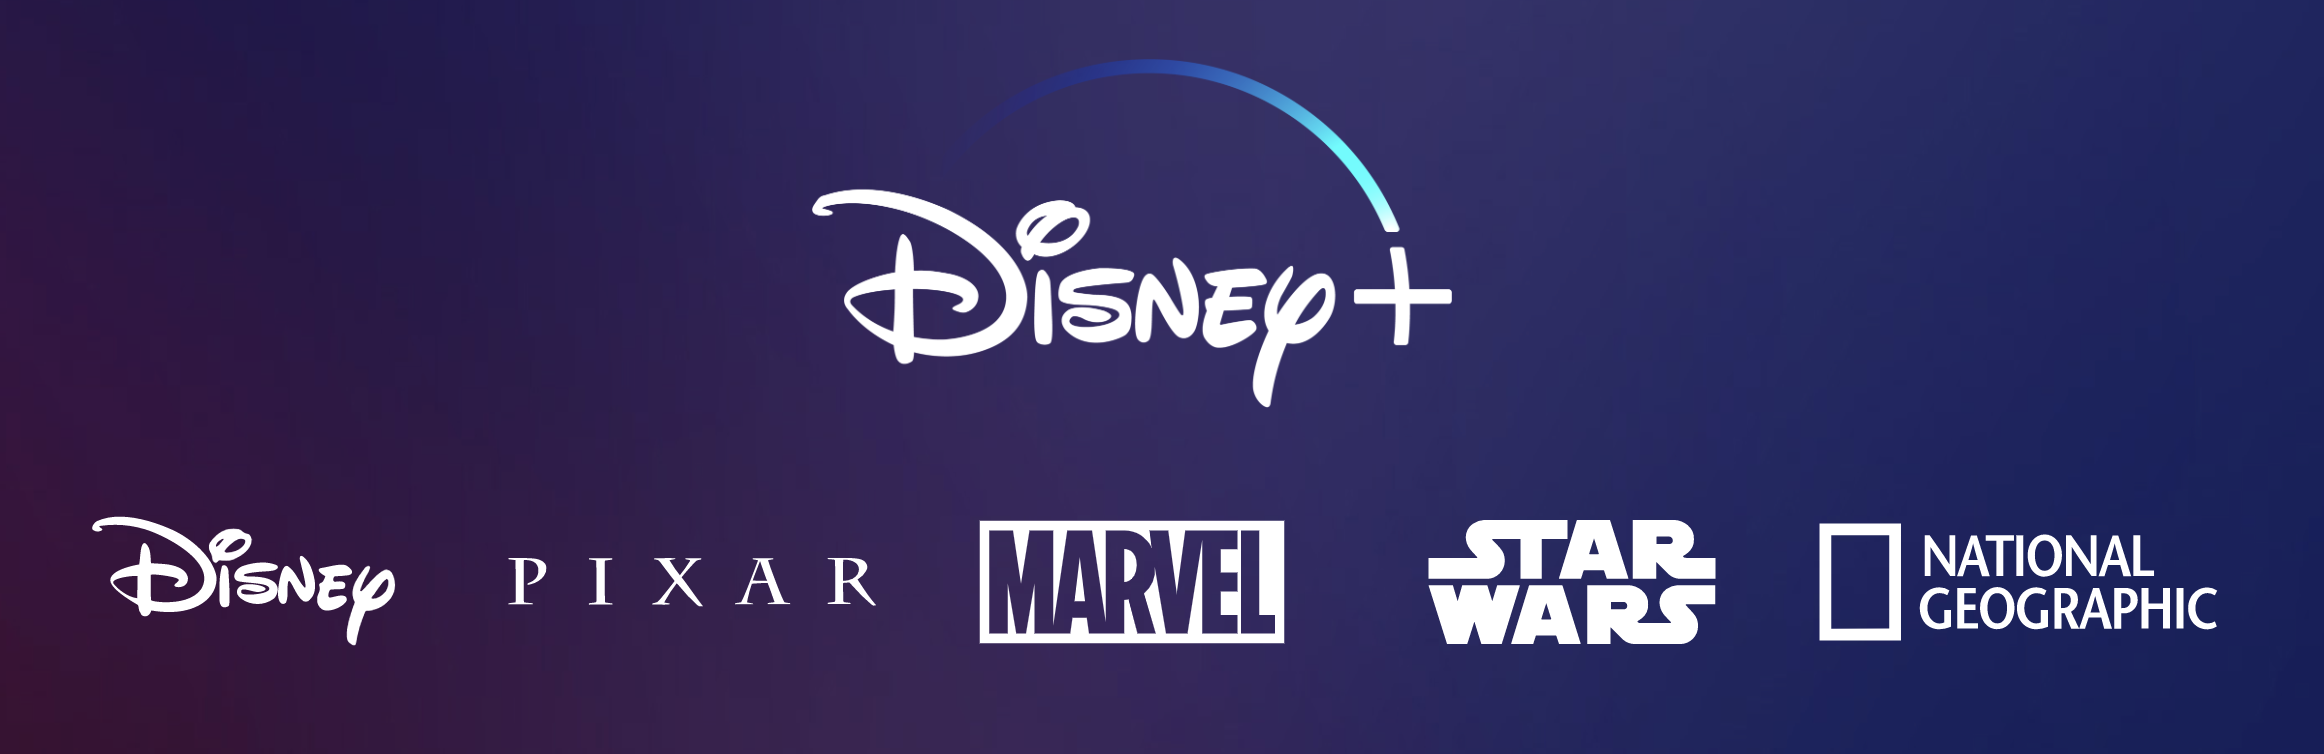 ディズニーの新動画ストリーミング Disney Plus の破壊力ーーnetflixに対する優位性を考えてみる Bridge ブリッジ